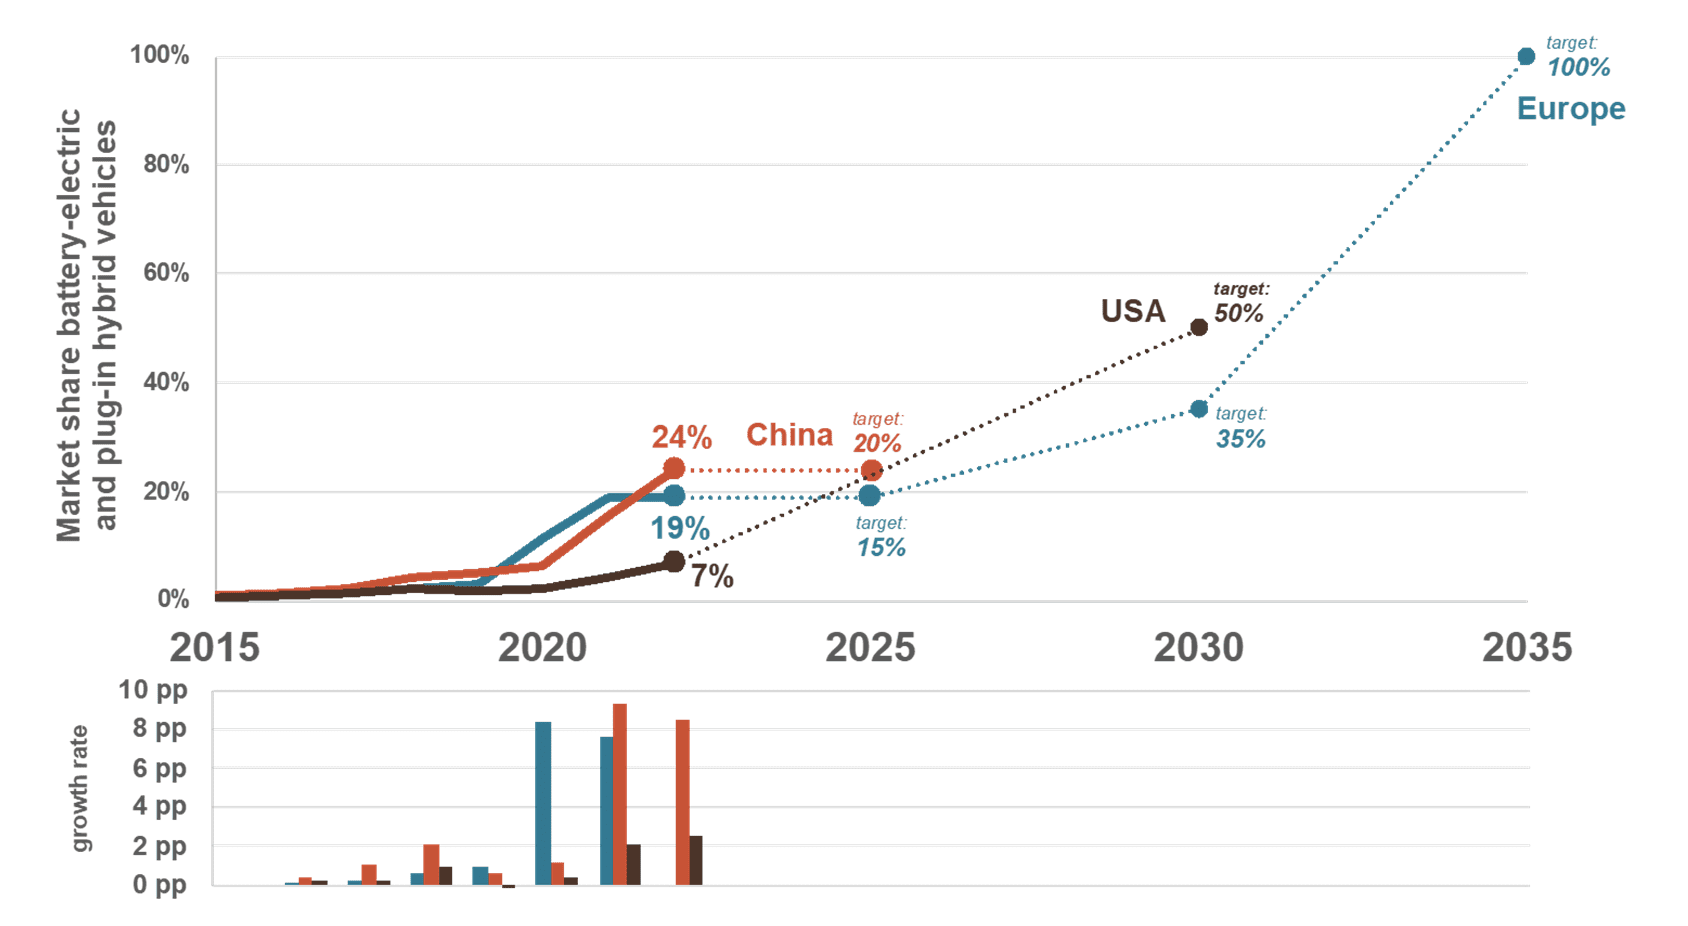 그림 5. 2035년까지 완전 전기 자동차에 대한 EU의 목표는 100%